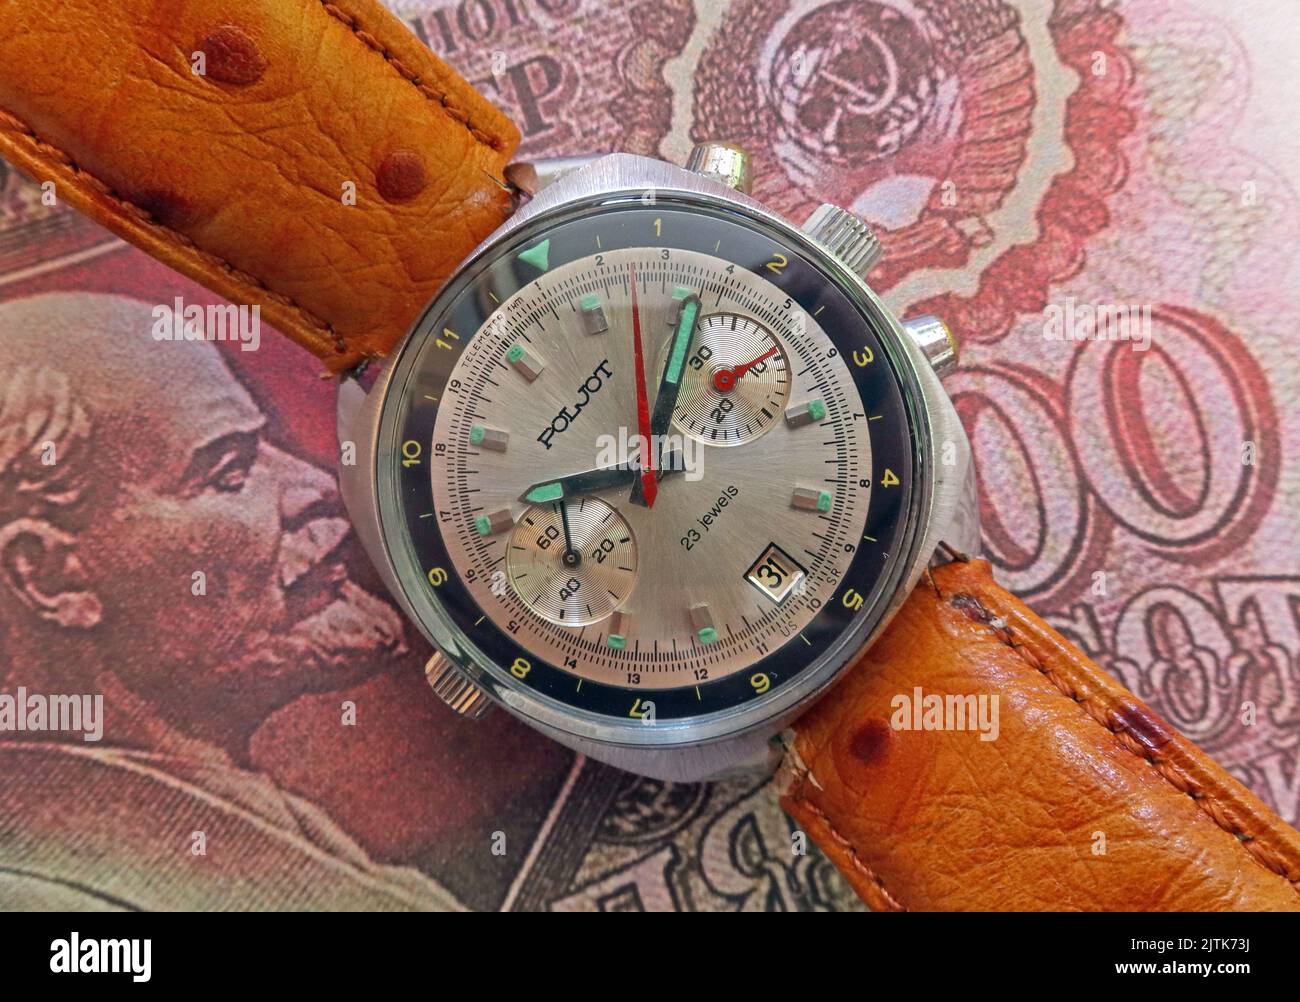 URSS Poljot Cronografo Sturmanskie orologio - compressore stile militare Foto Stock